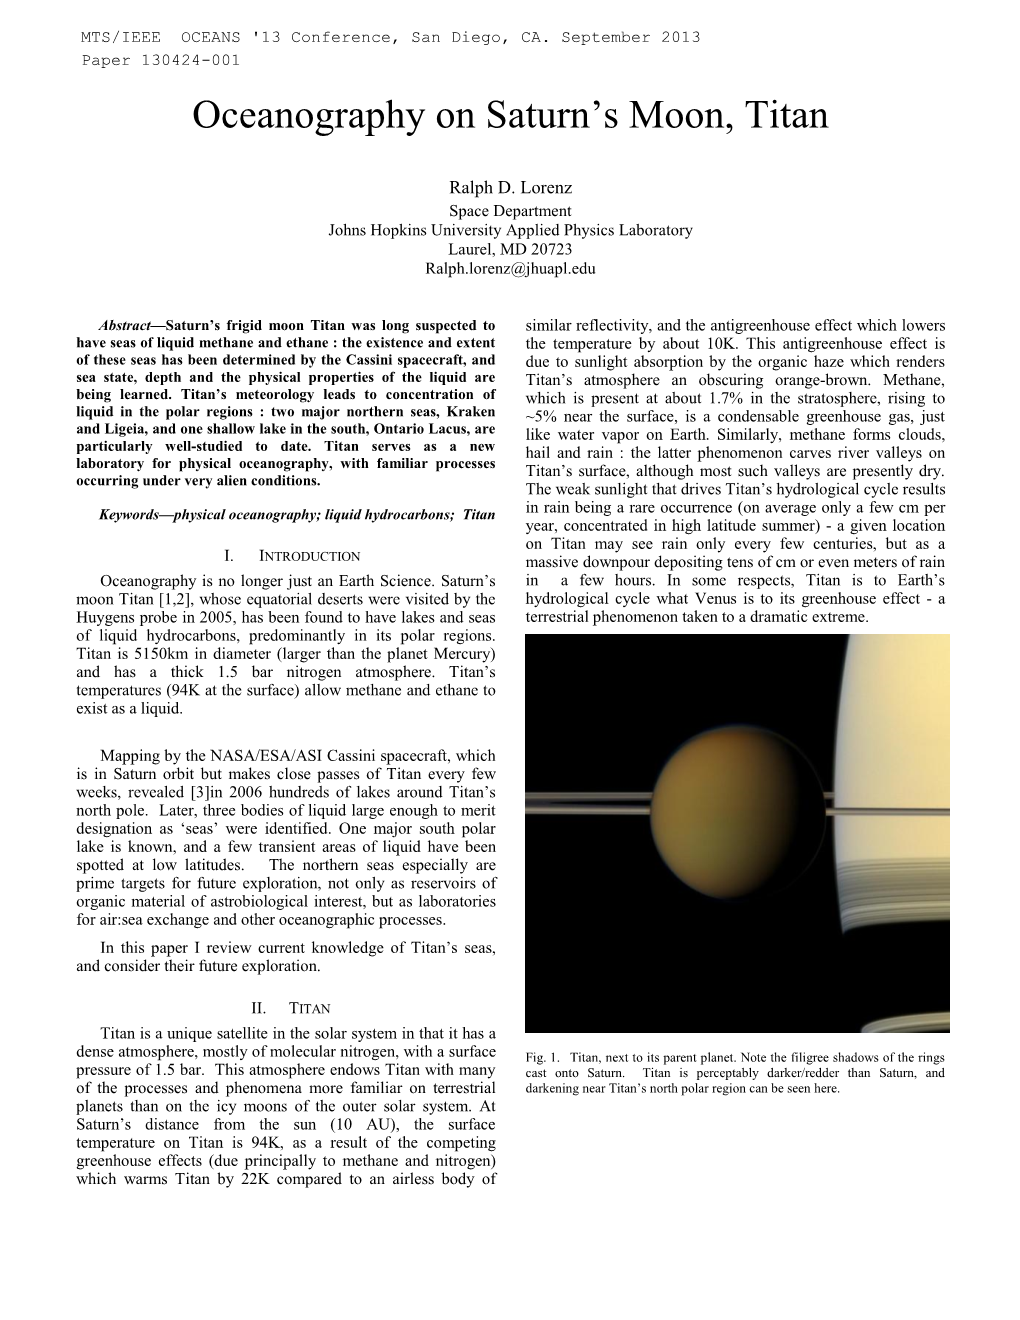 Oceanography on Saturn's Moon, Titan